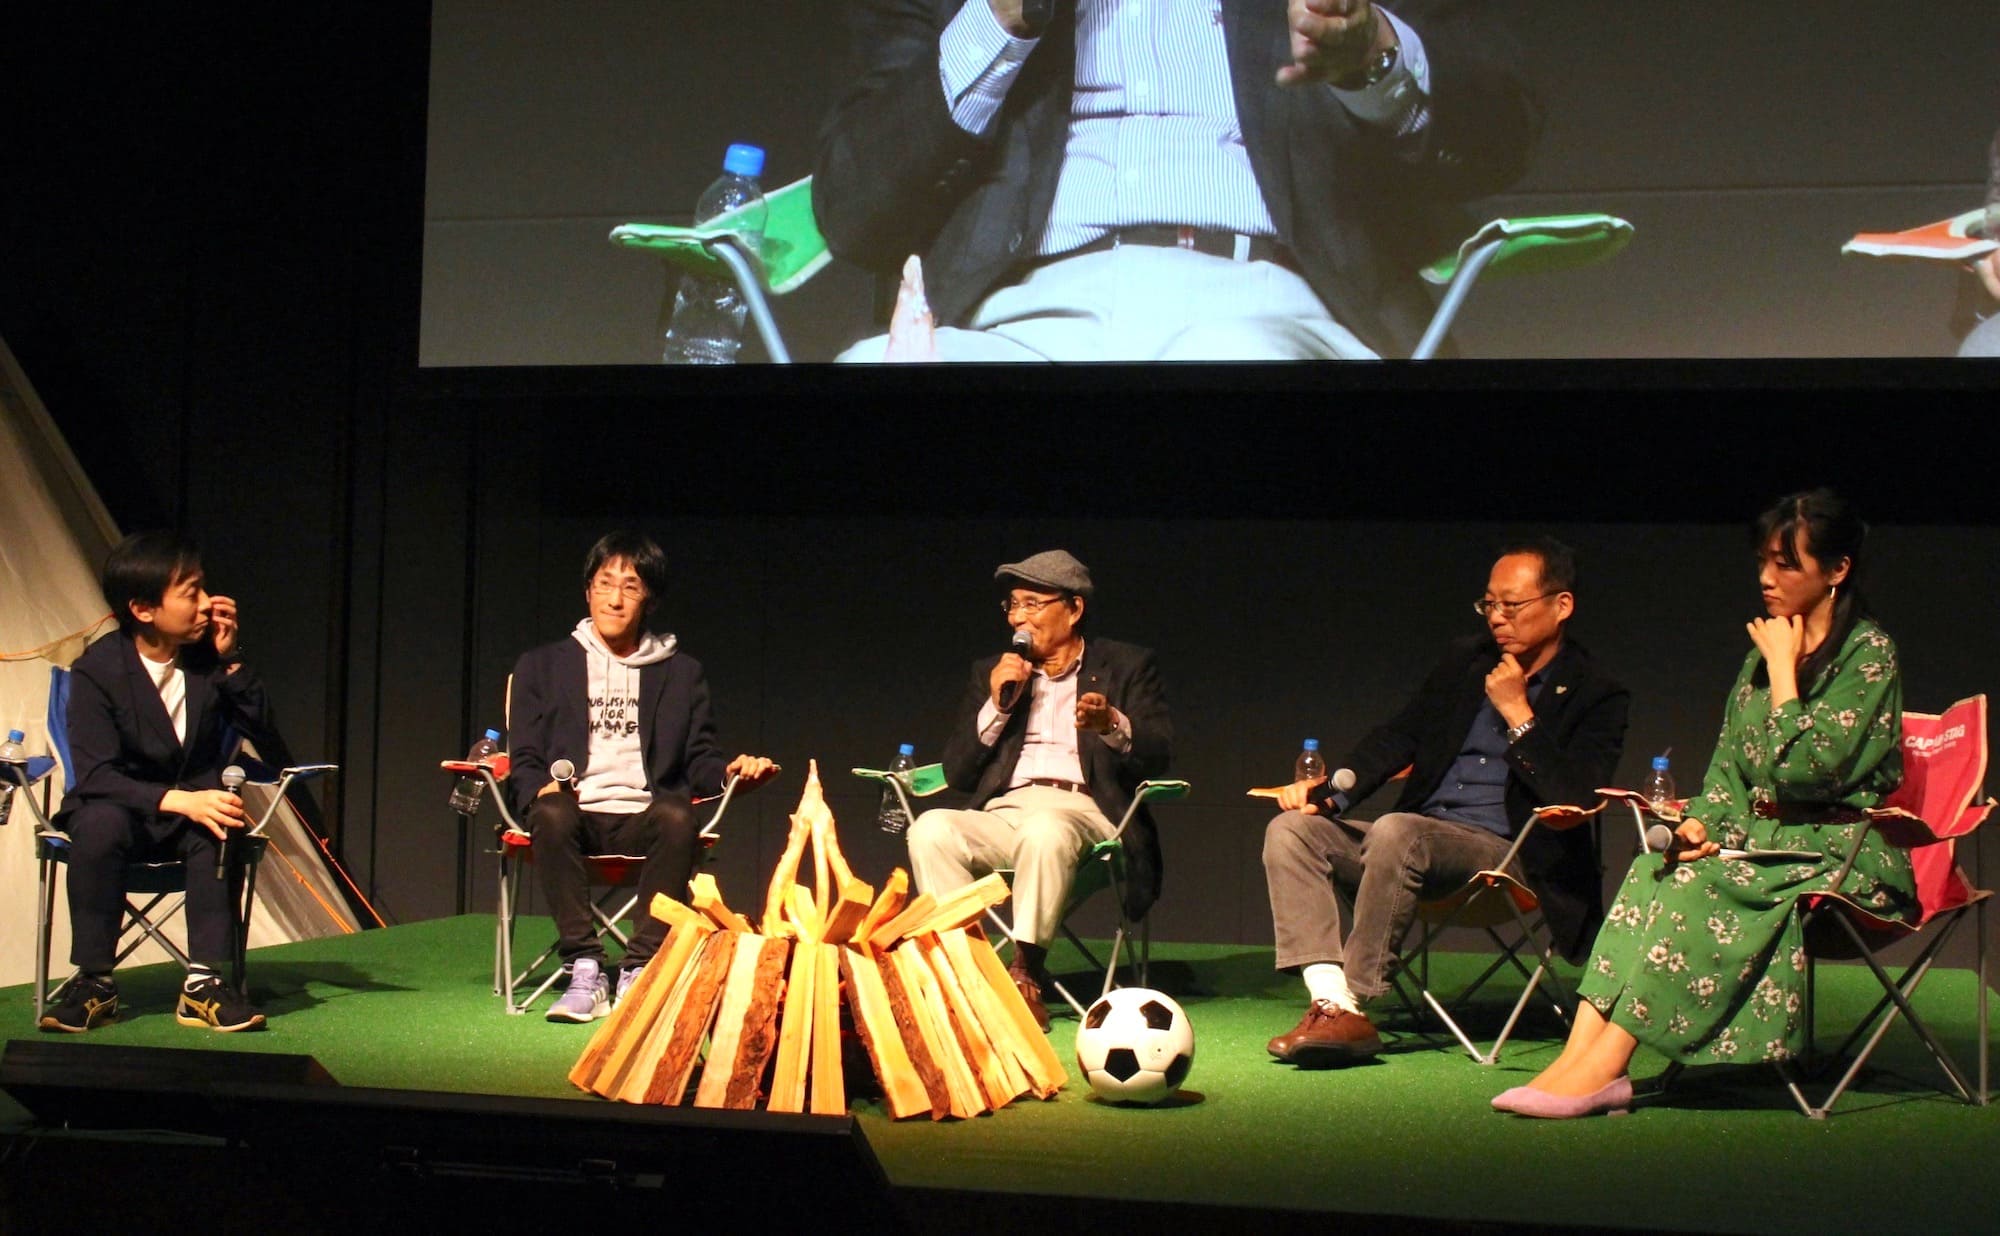 岡田武史氏「ティール型組織をプレッシャーに感じる人もいる」　元サッカー日本代表監督が語る現代社会の限界